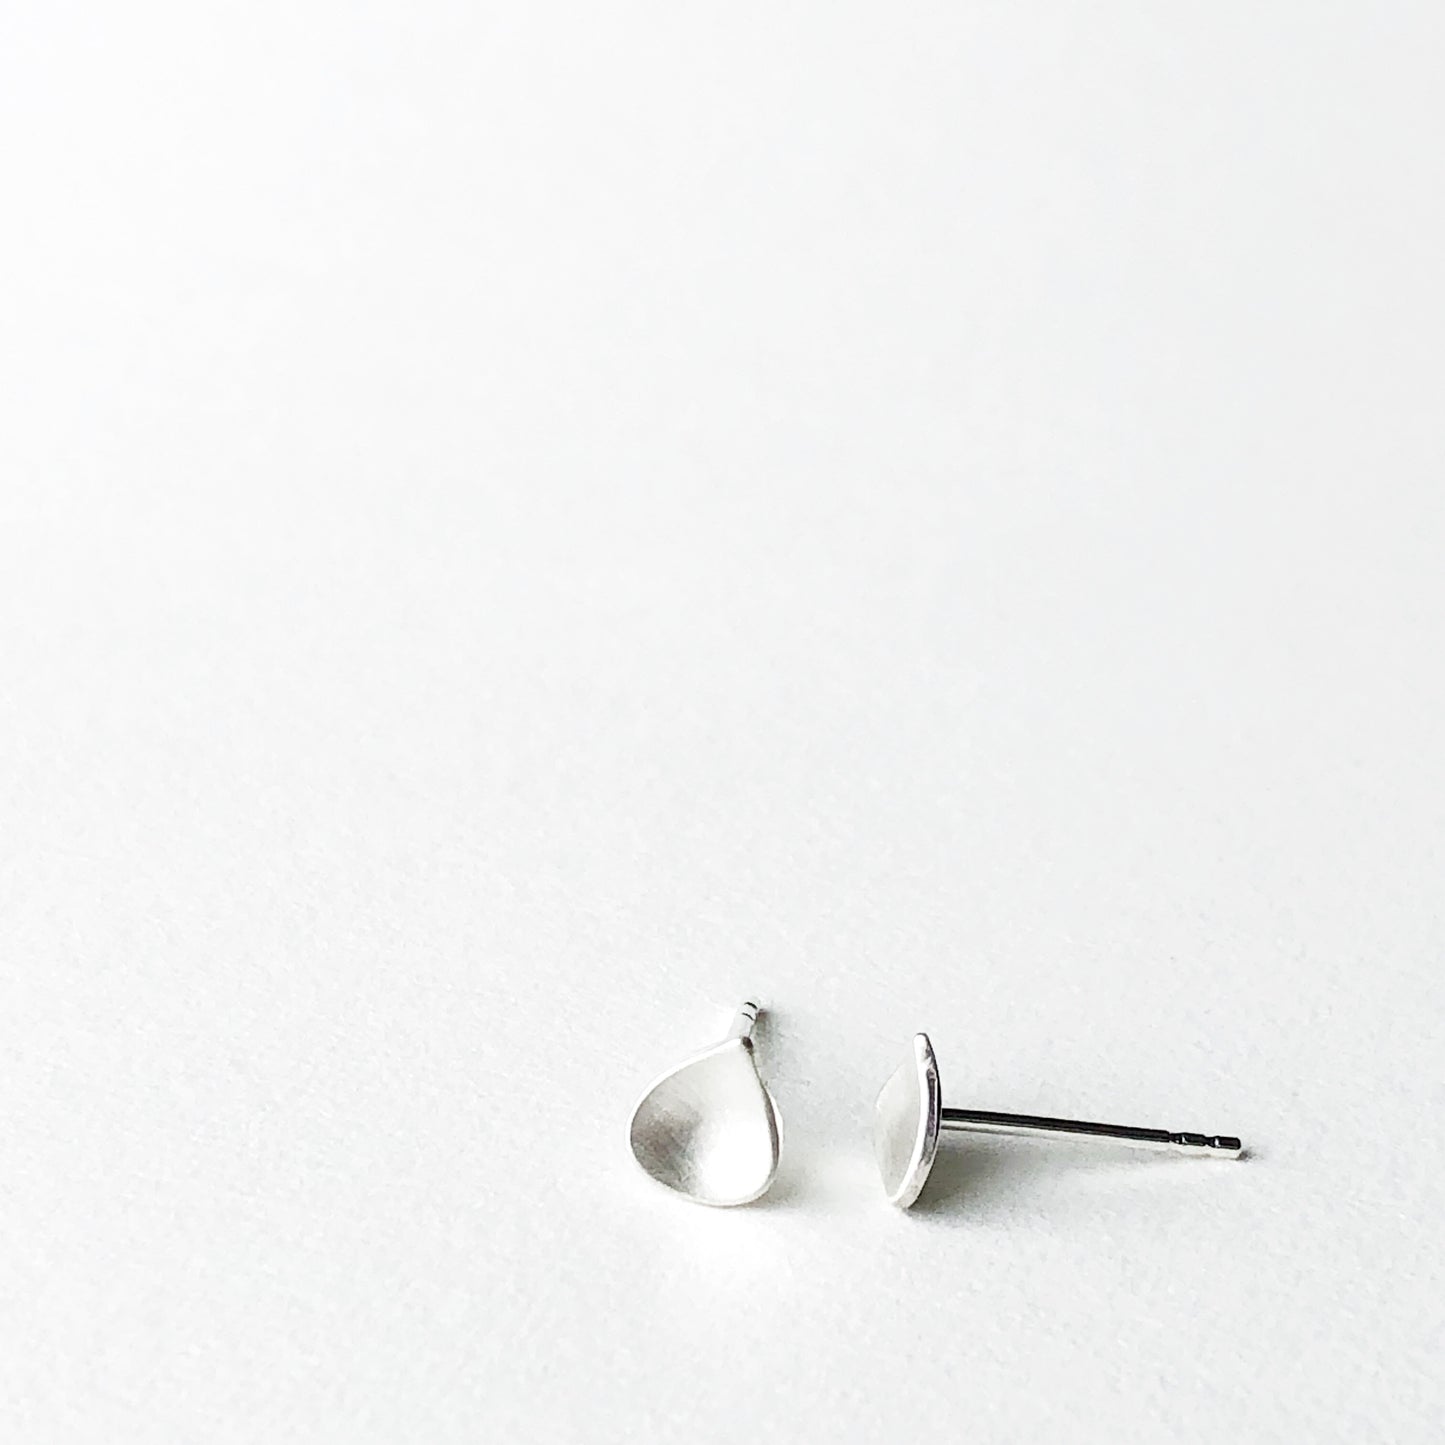 Tiny Water Drop Silver Stud Earrings